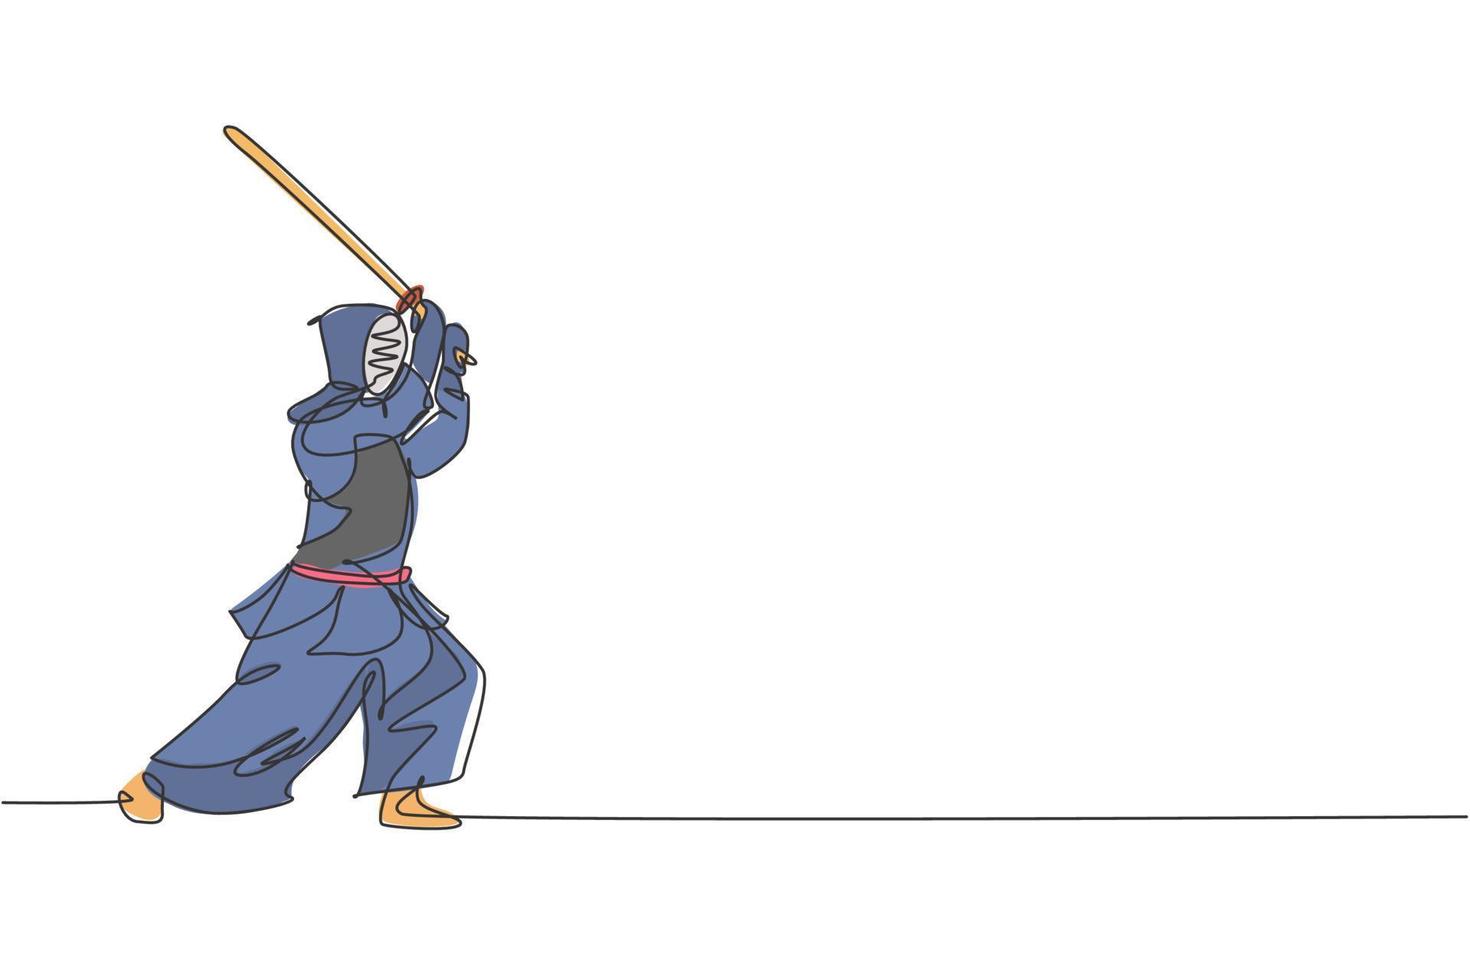 en enda linjeteckning av ung energisk man tränar attackfärdighet på kendo med träsvärd på gymcentret vektorillustration. stridssportkoncept. modern kontinuerlig linjeritningsdesign vektor